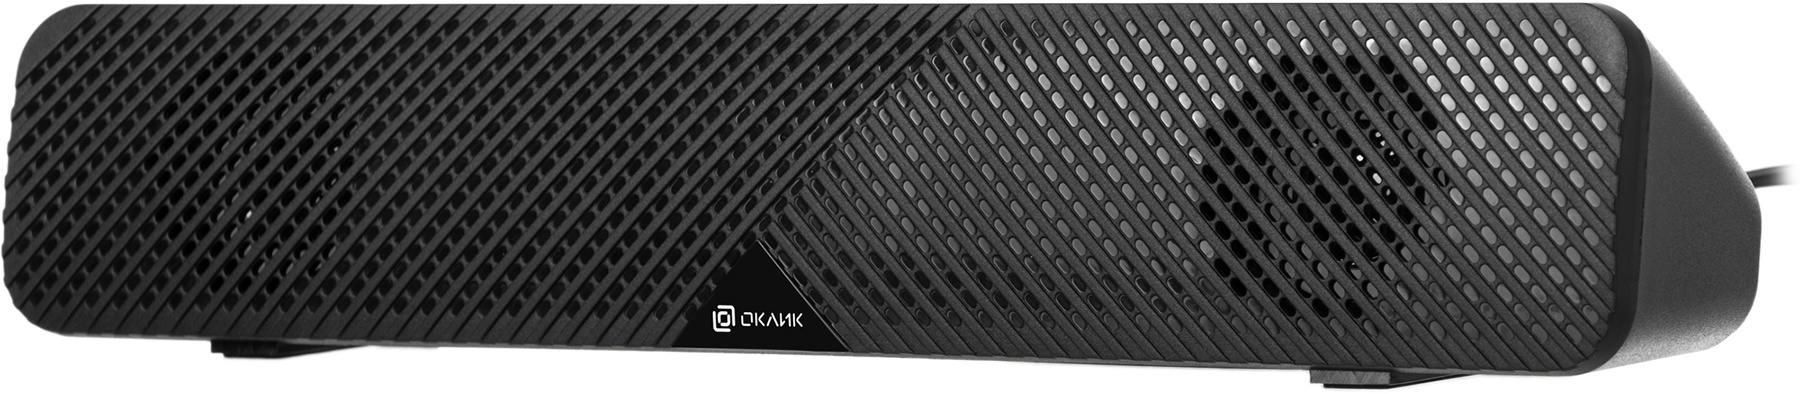 Саундбар Оклик OK-500S 2.0 6Вт, черный